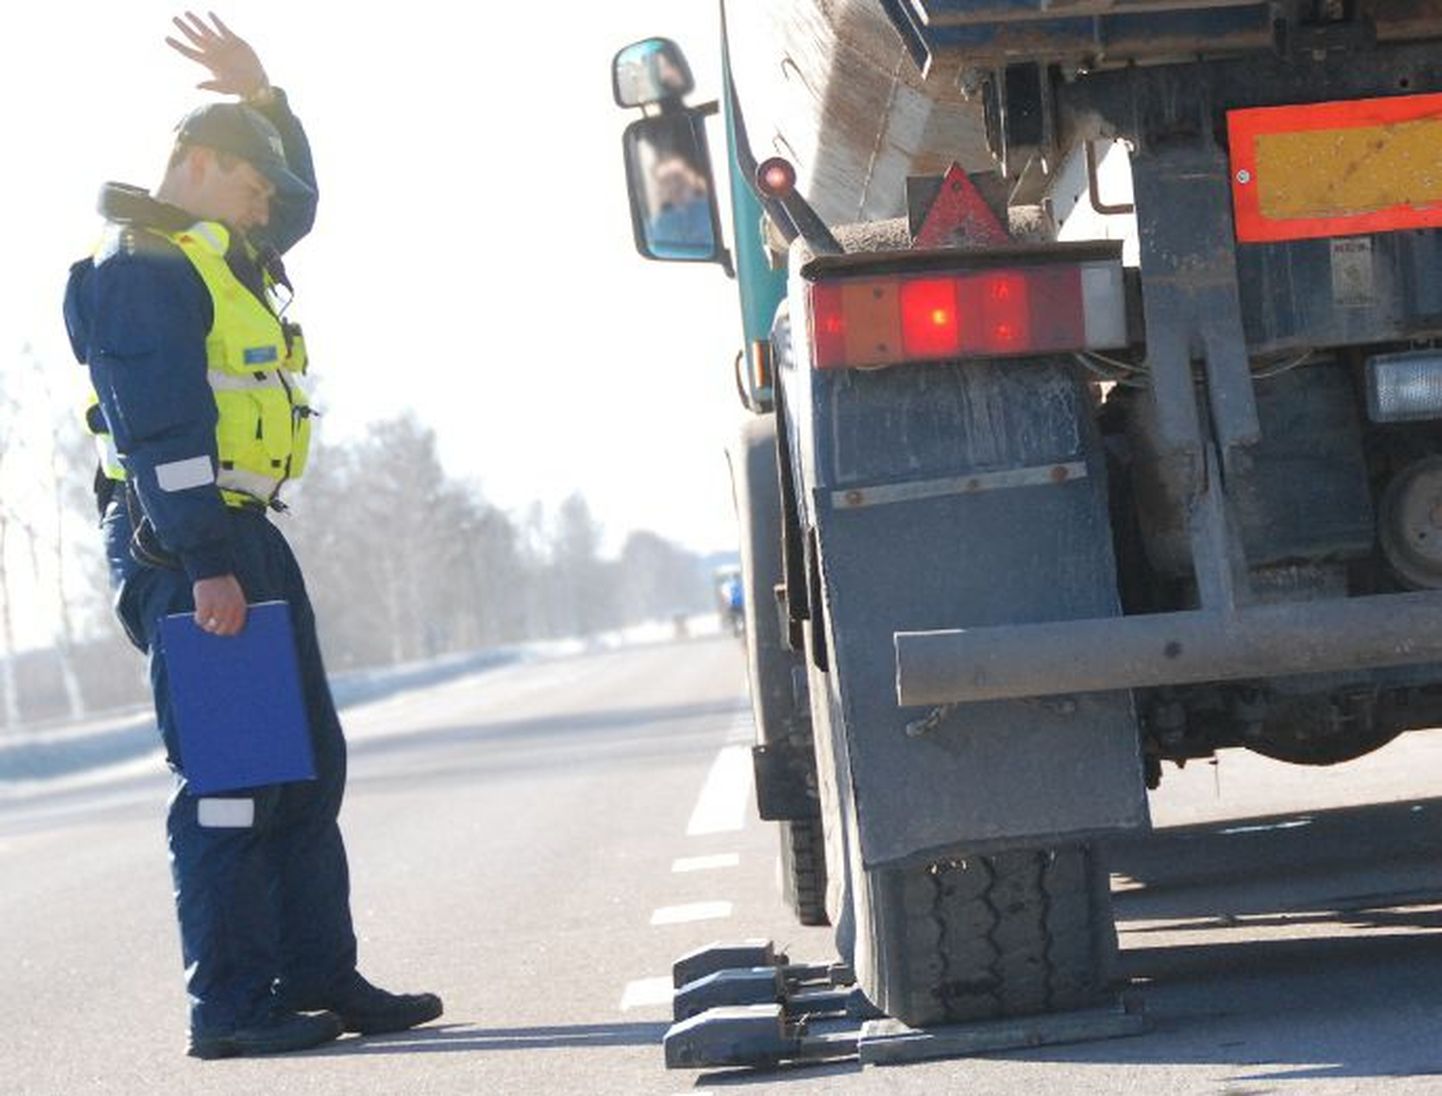 Lõuna-Eestis rikuvad veokijuhid endiselt enam töö- ja puhkeaja nõudeid. Foto on illustratiivne.